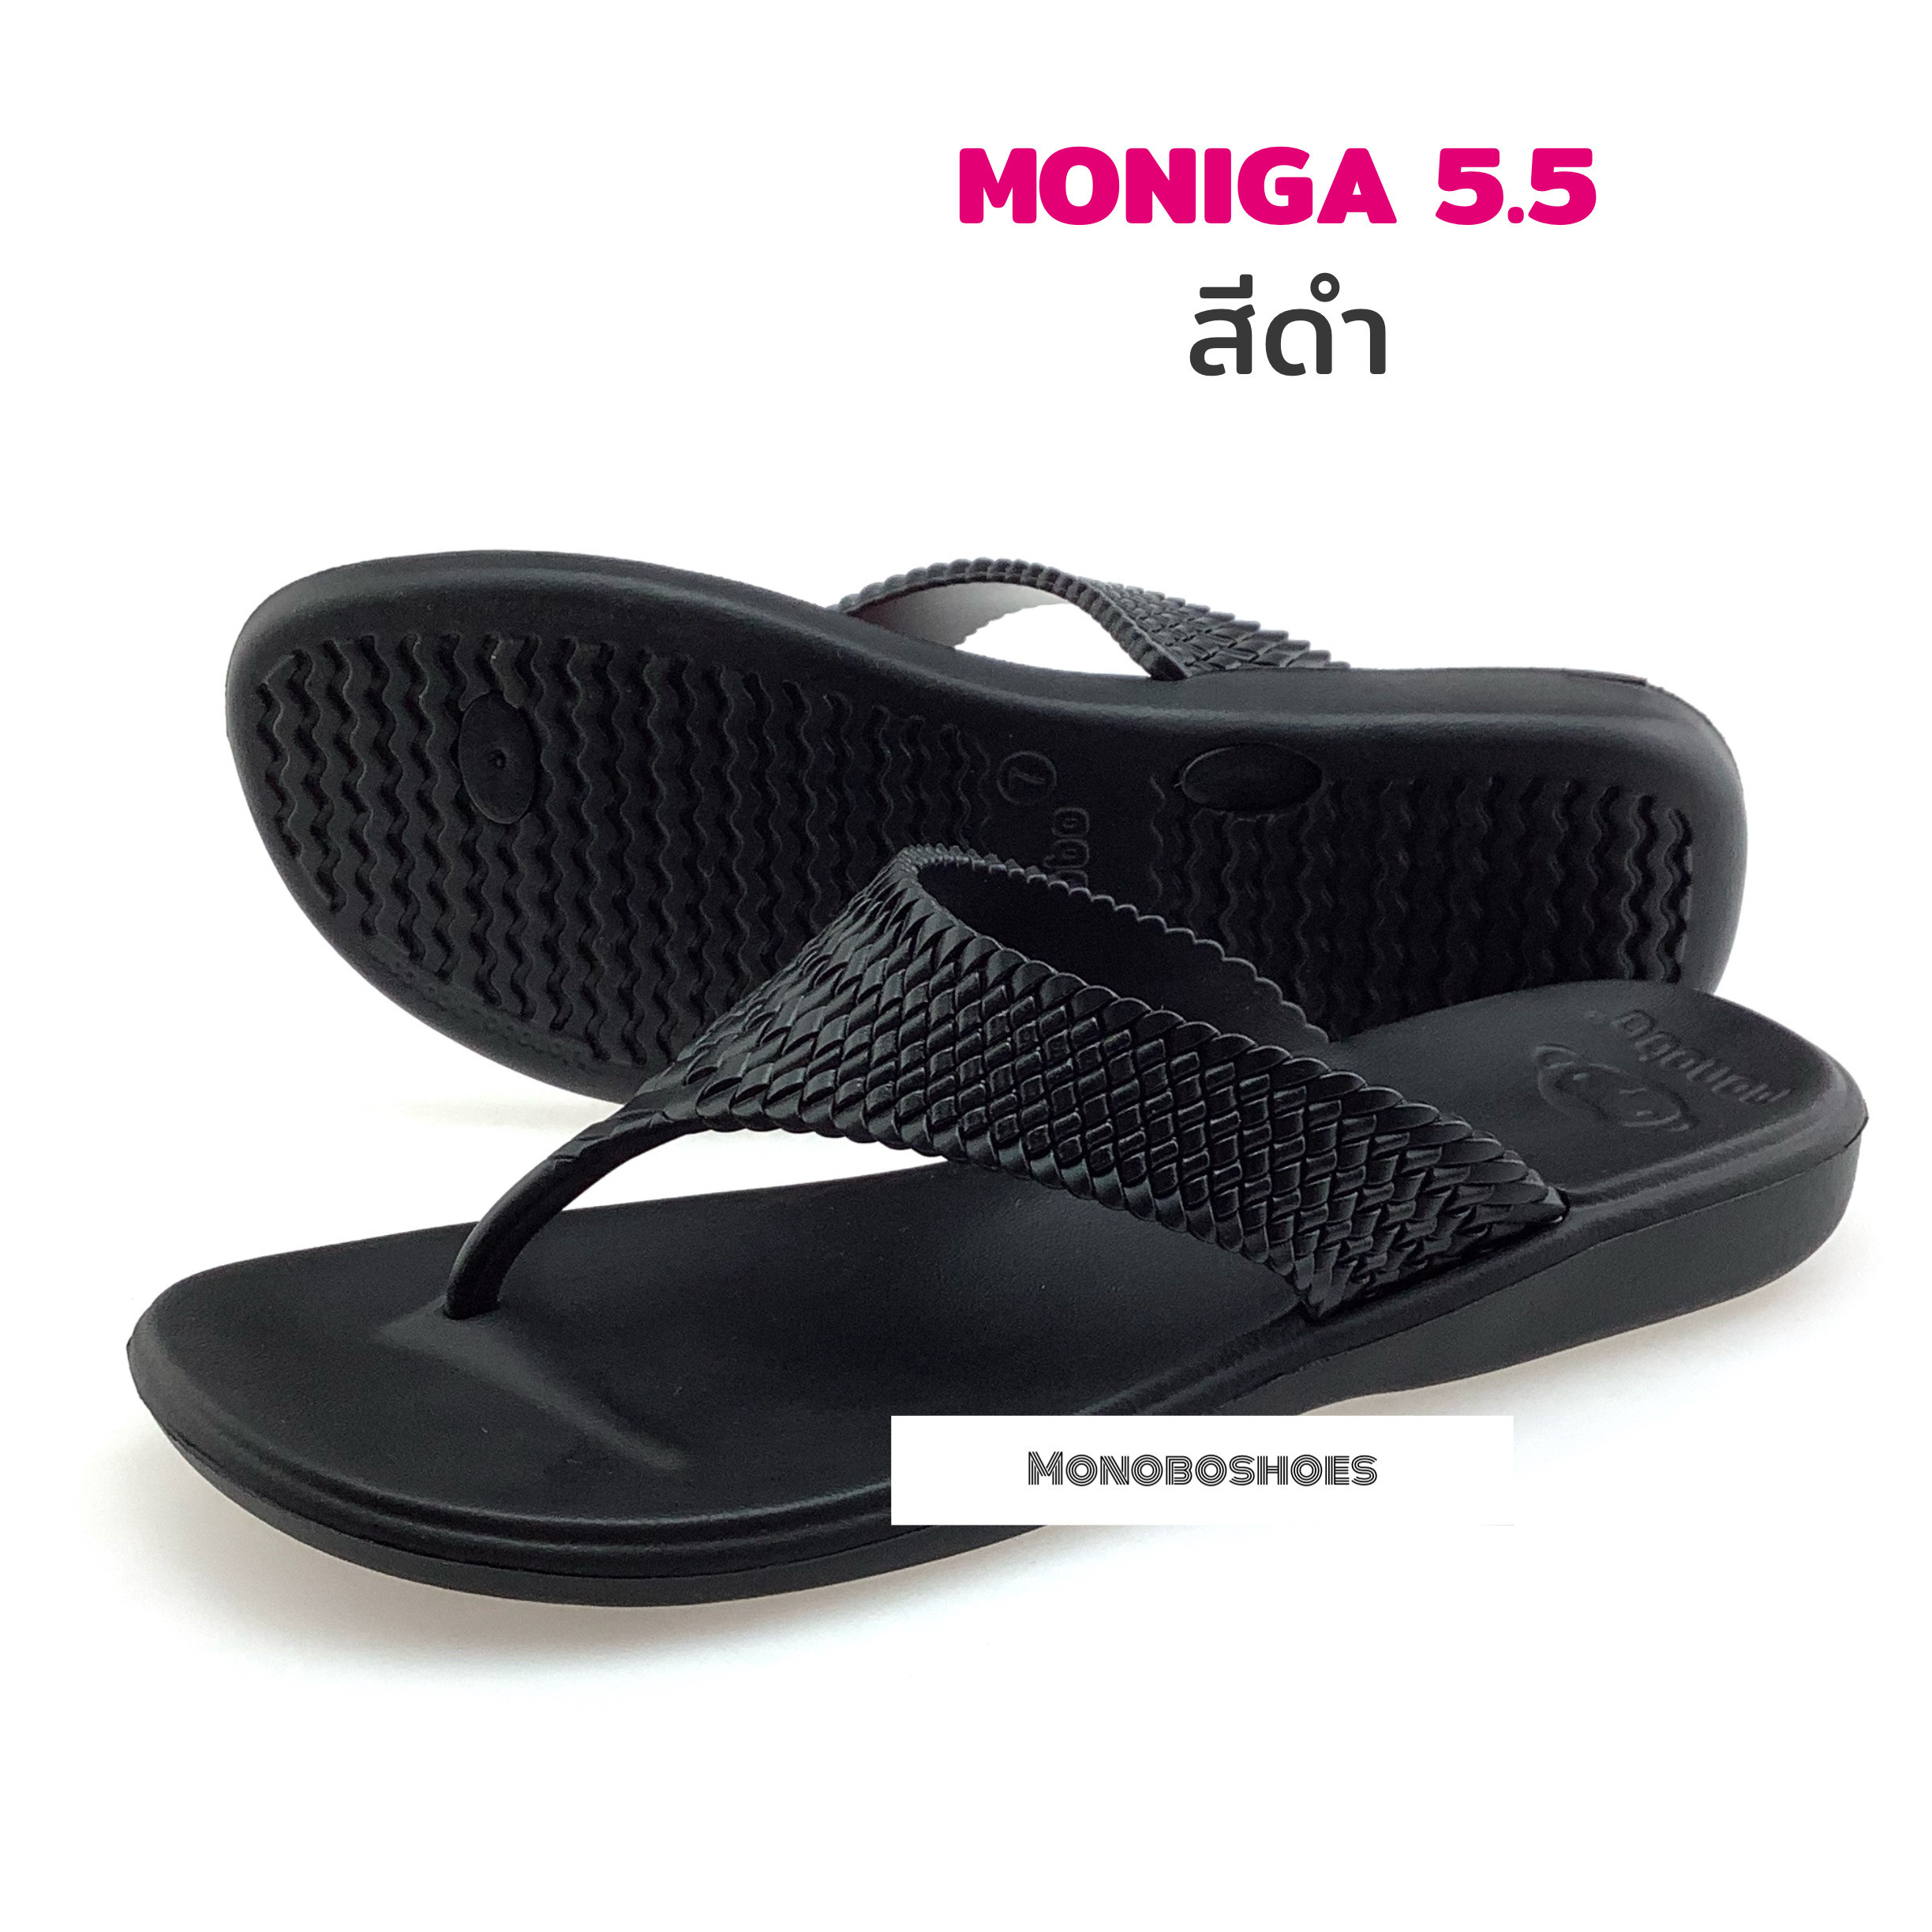 Dép Nữ Quai Kẹp Siêu Nhẹ Thái Lan Monobo Moniga 5.3 5.5